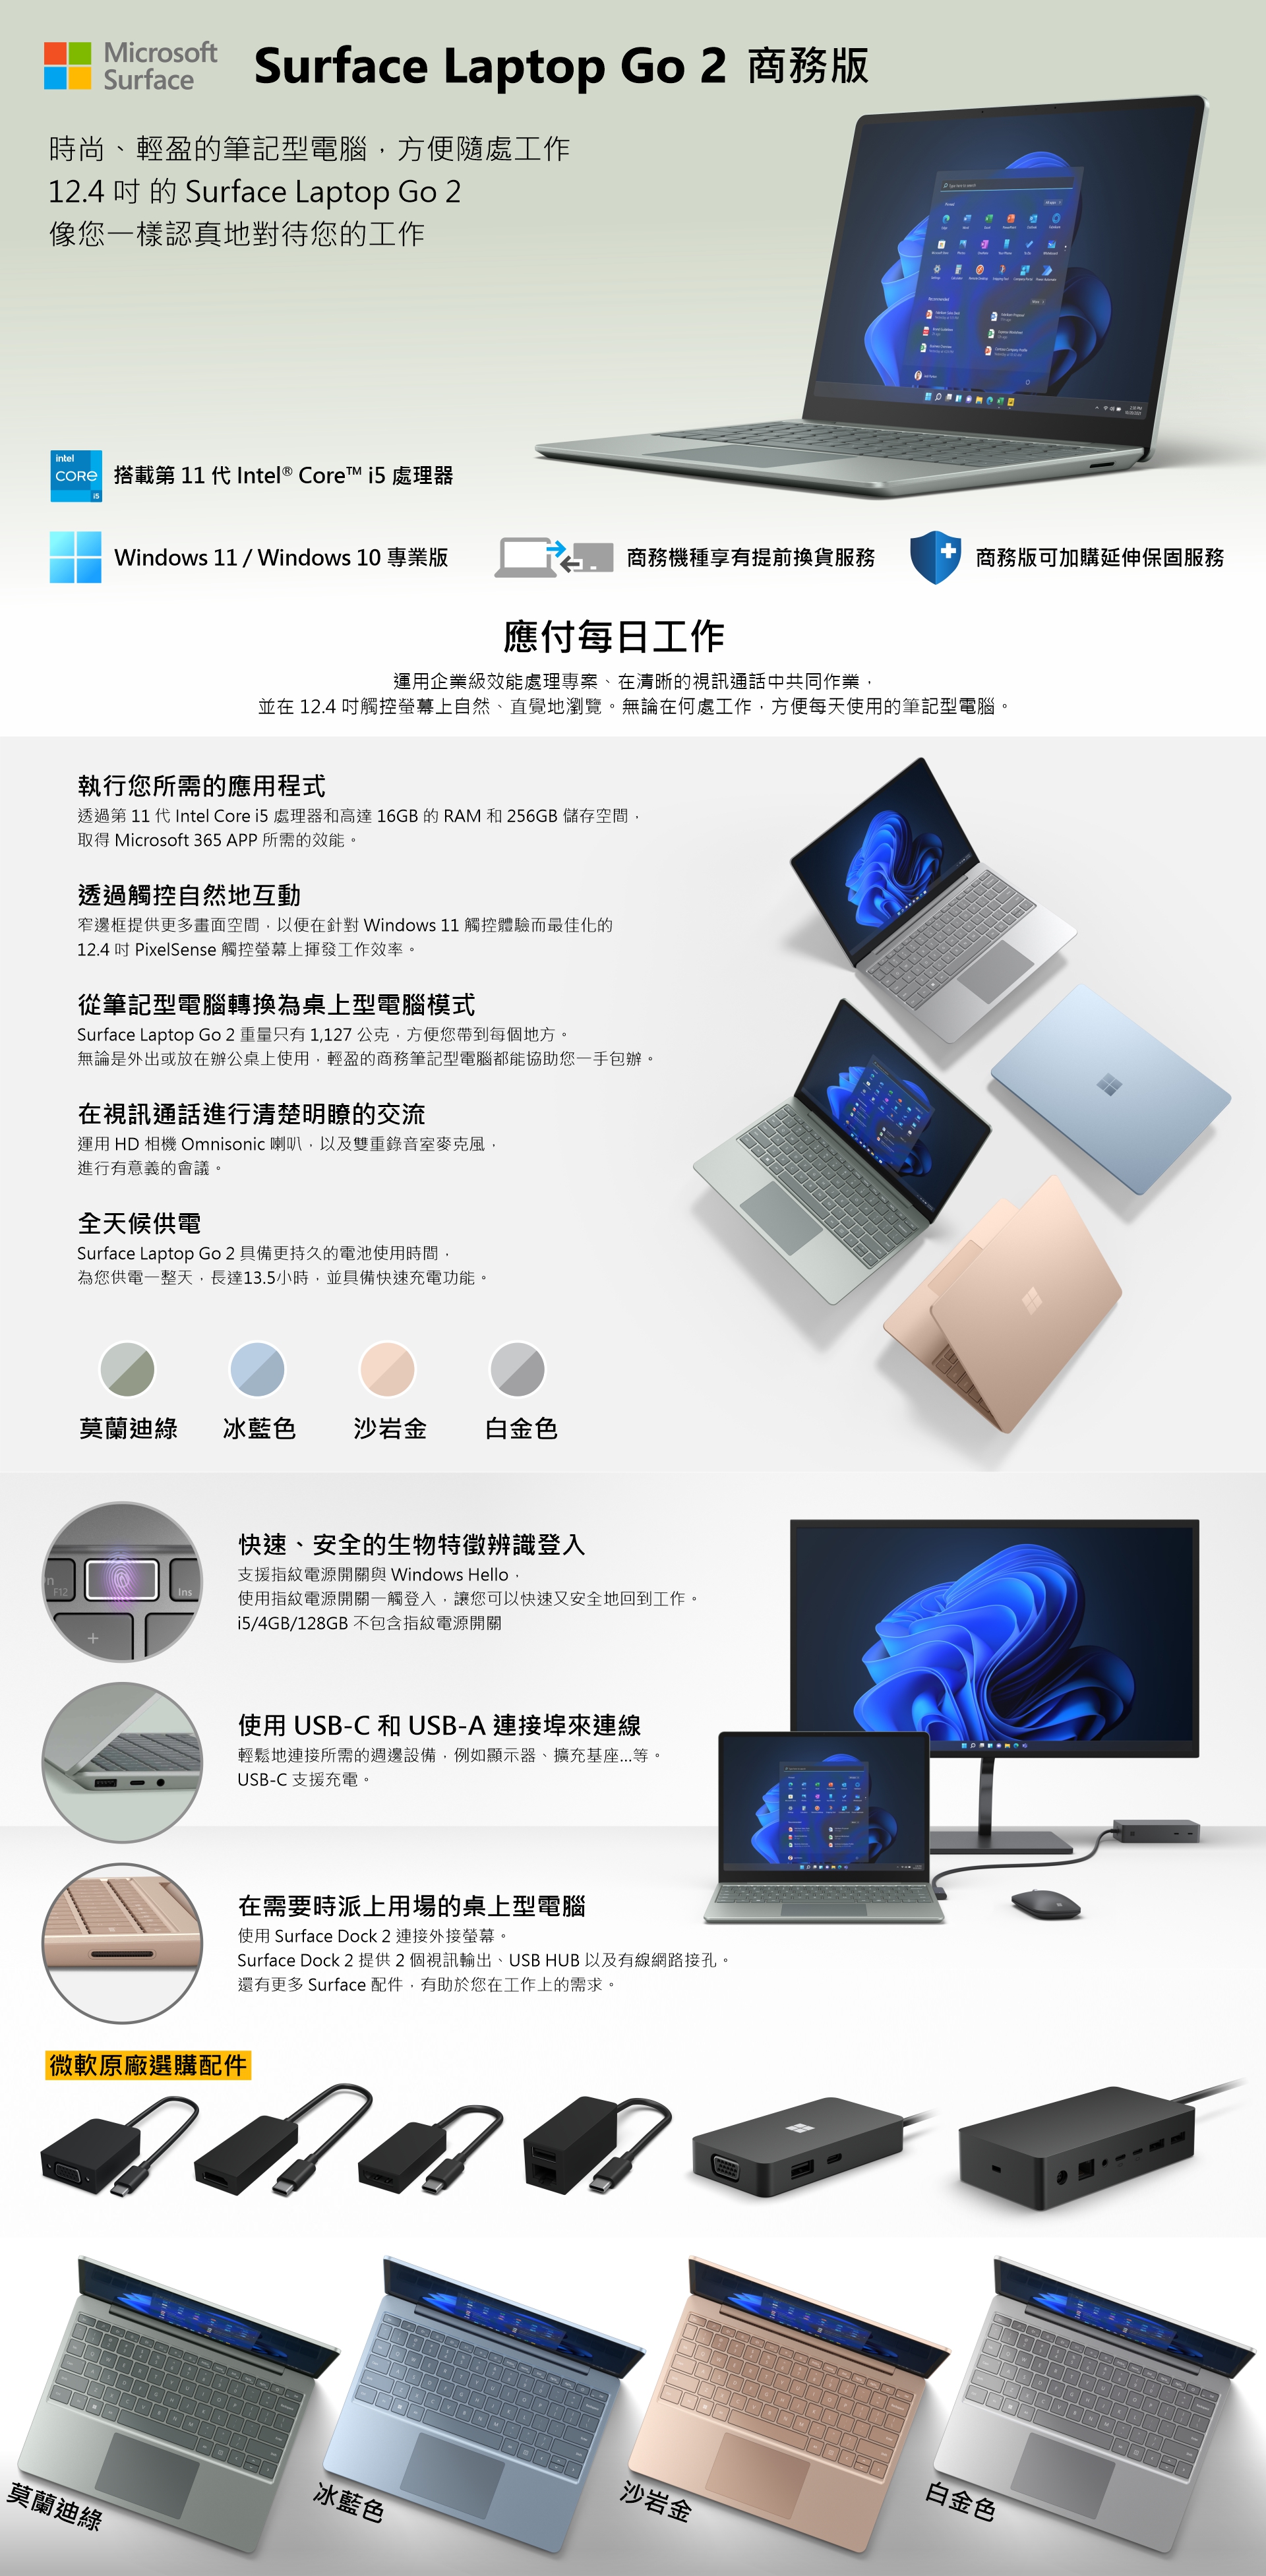 赫普網購平台| Surface Laptop Go 2 Core™ i5/8g/128g 商務版